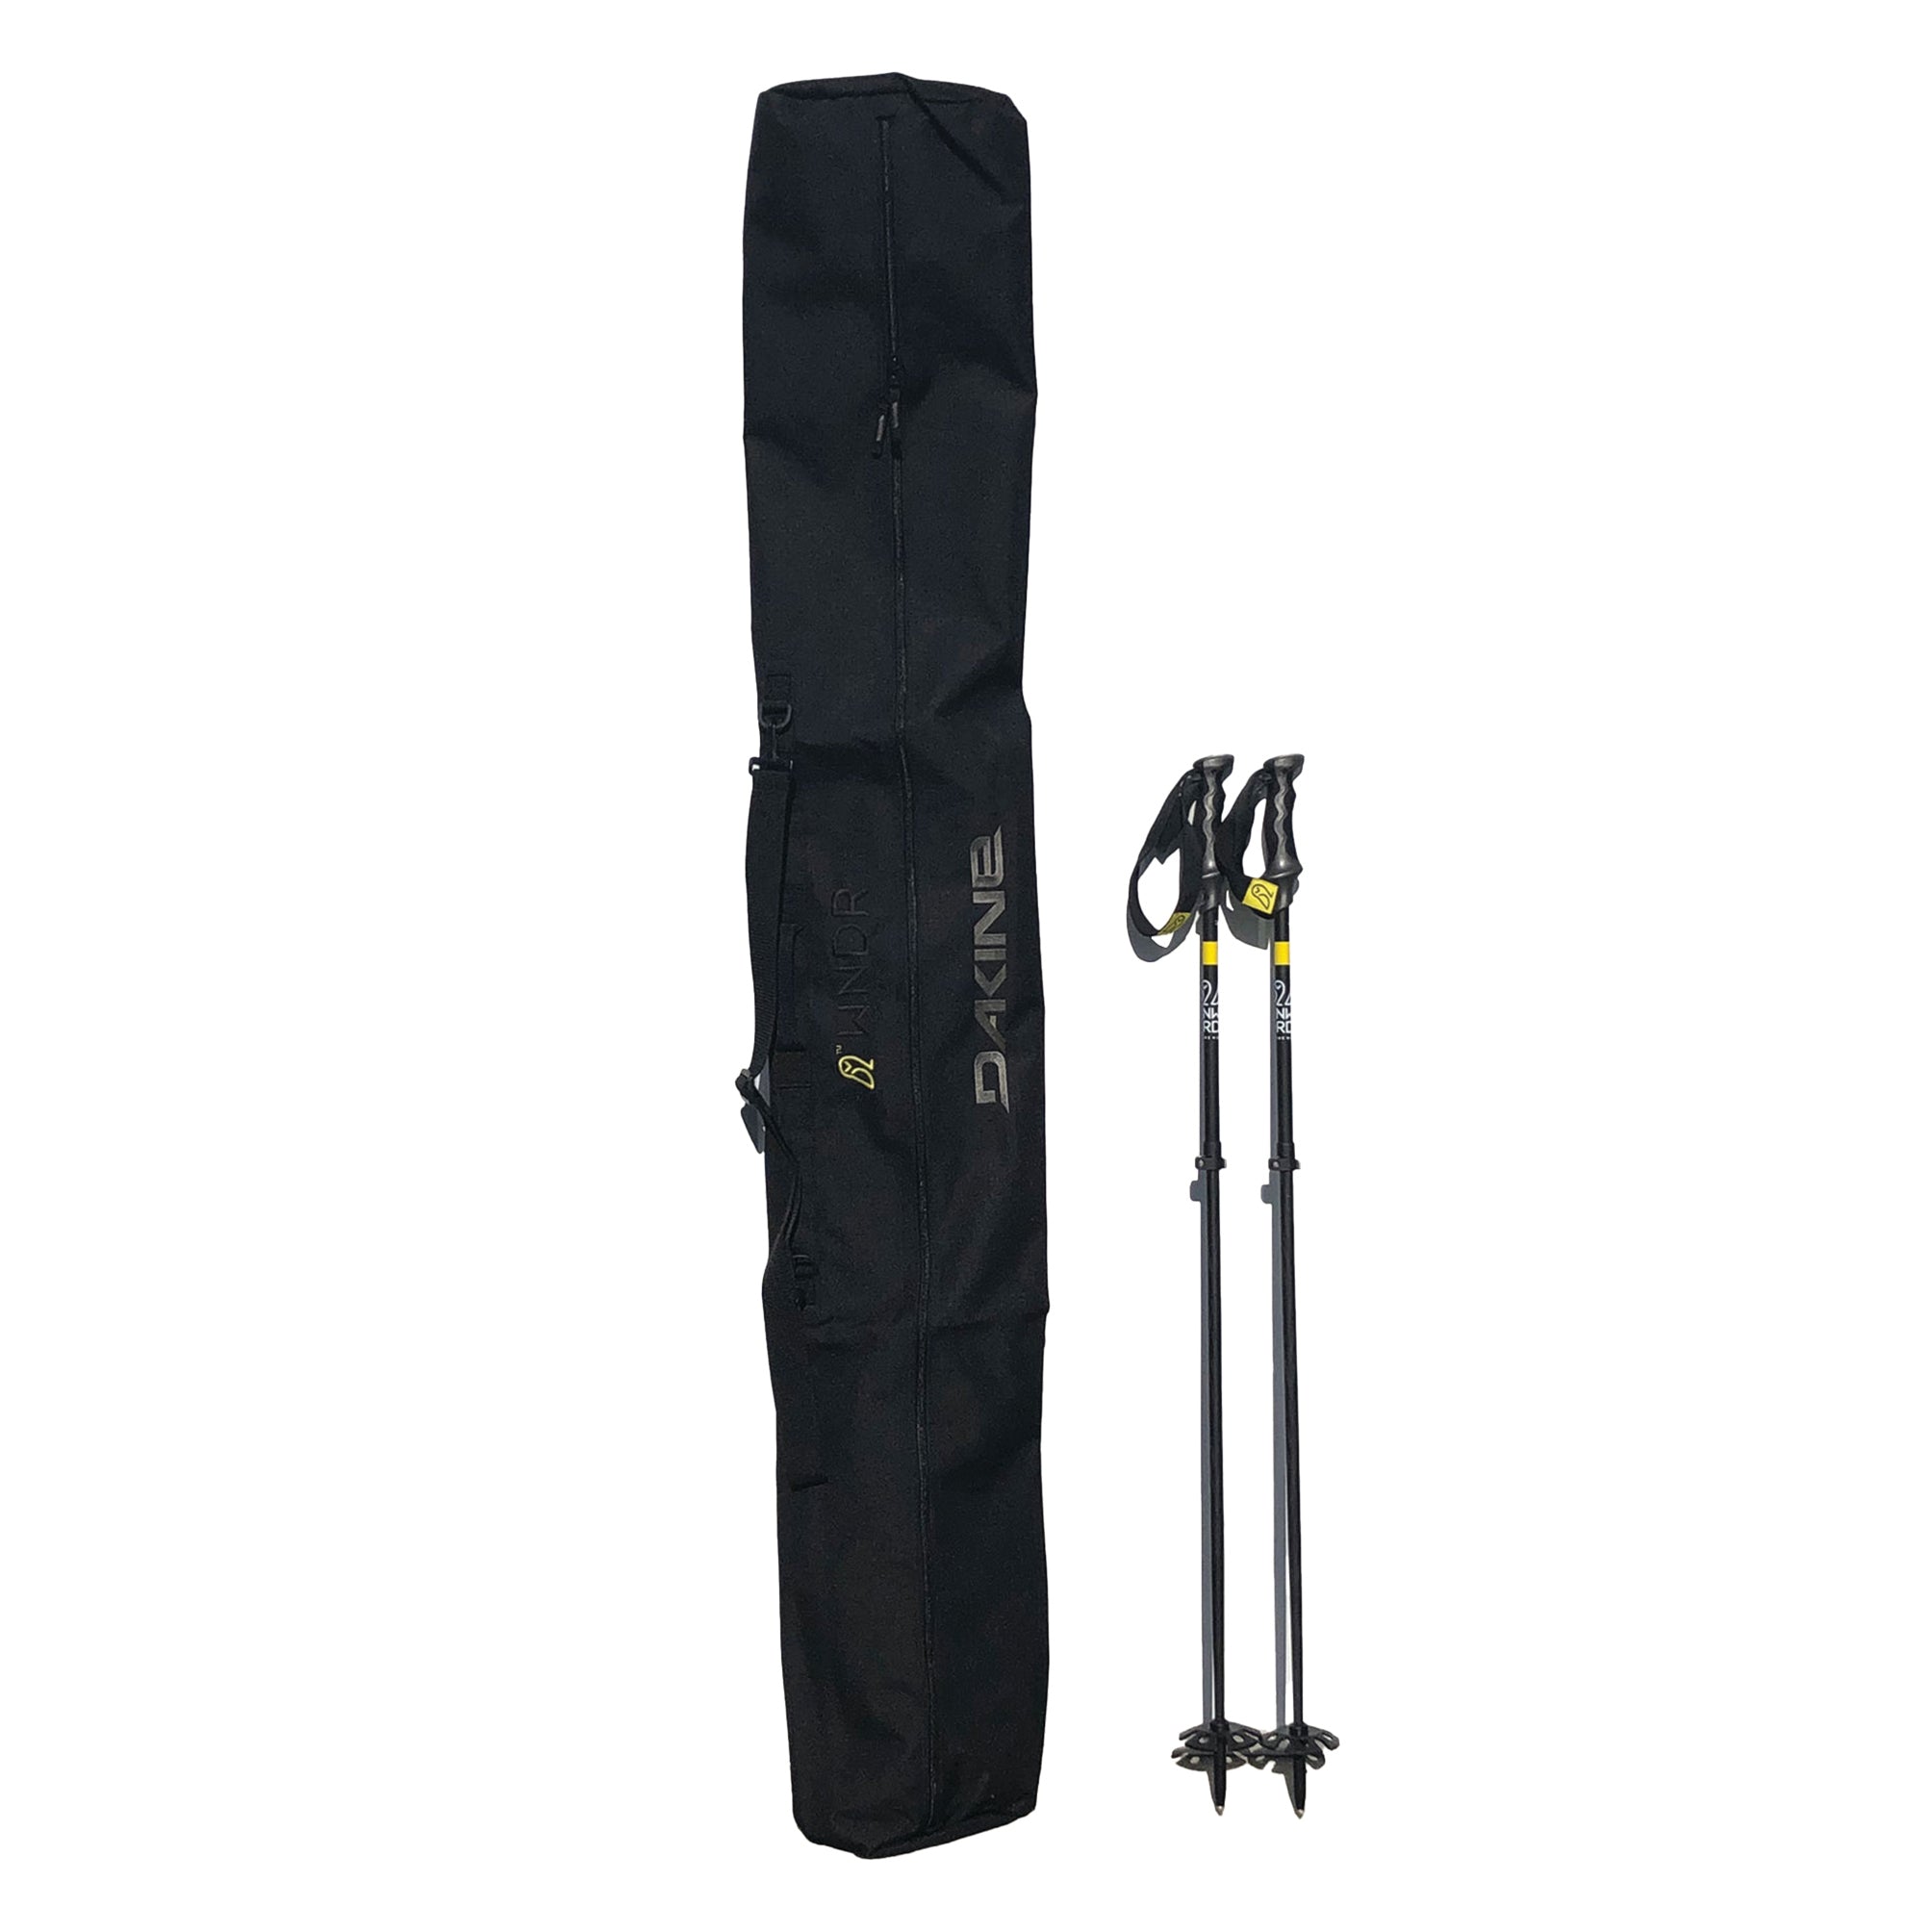 Element Equipment Deluxe Padded Ski Bag - Premium High End Travel Bag